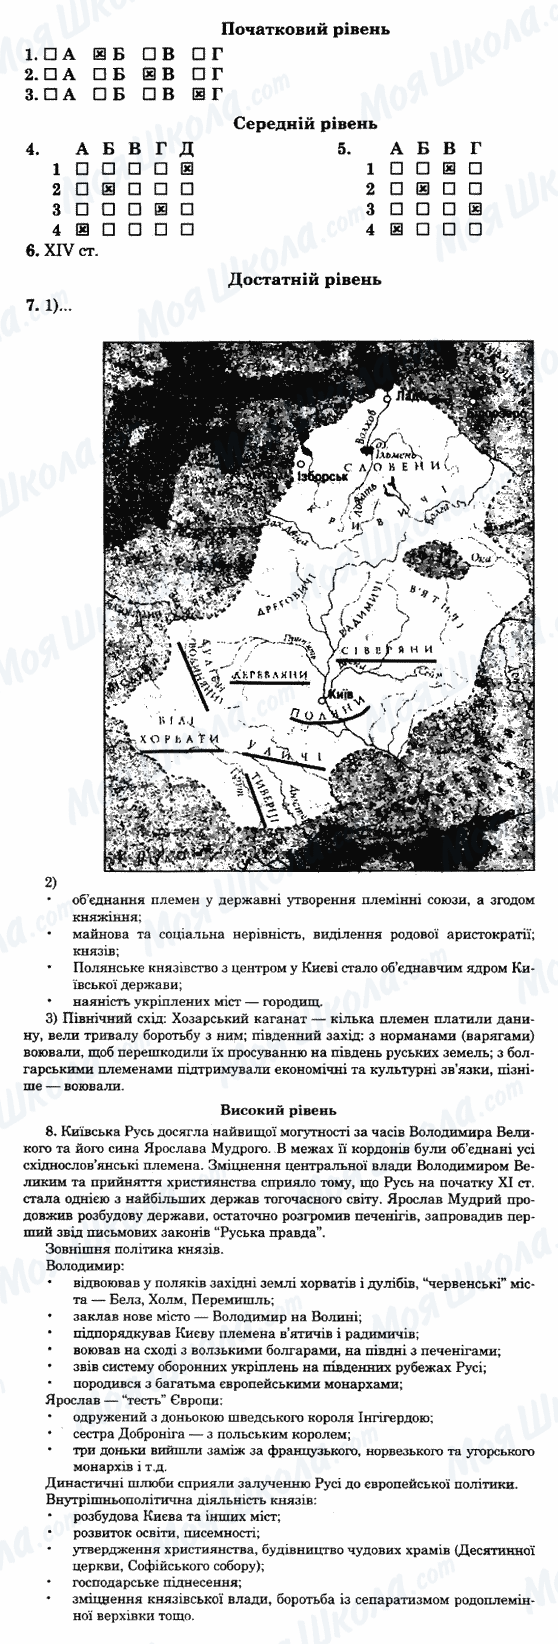 ГДЗ Історія України 7 клас сторінка 35-варіант